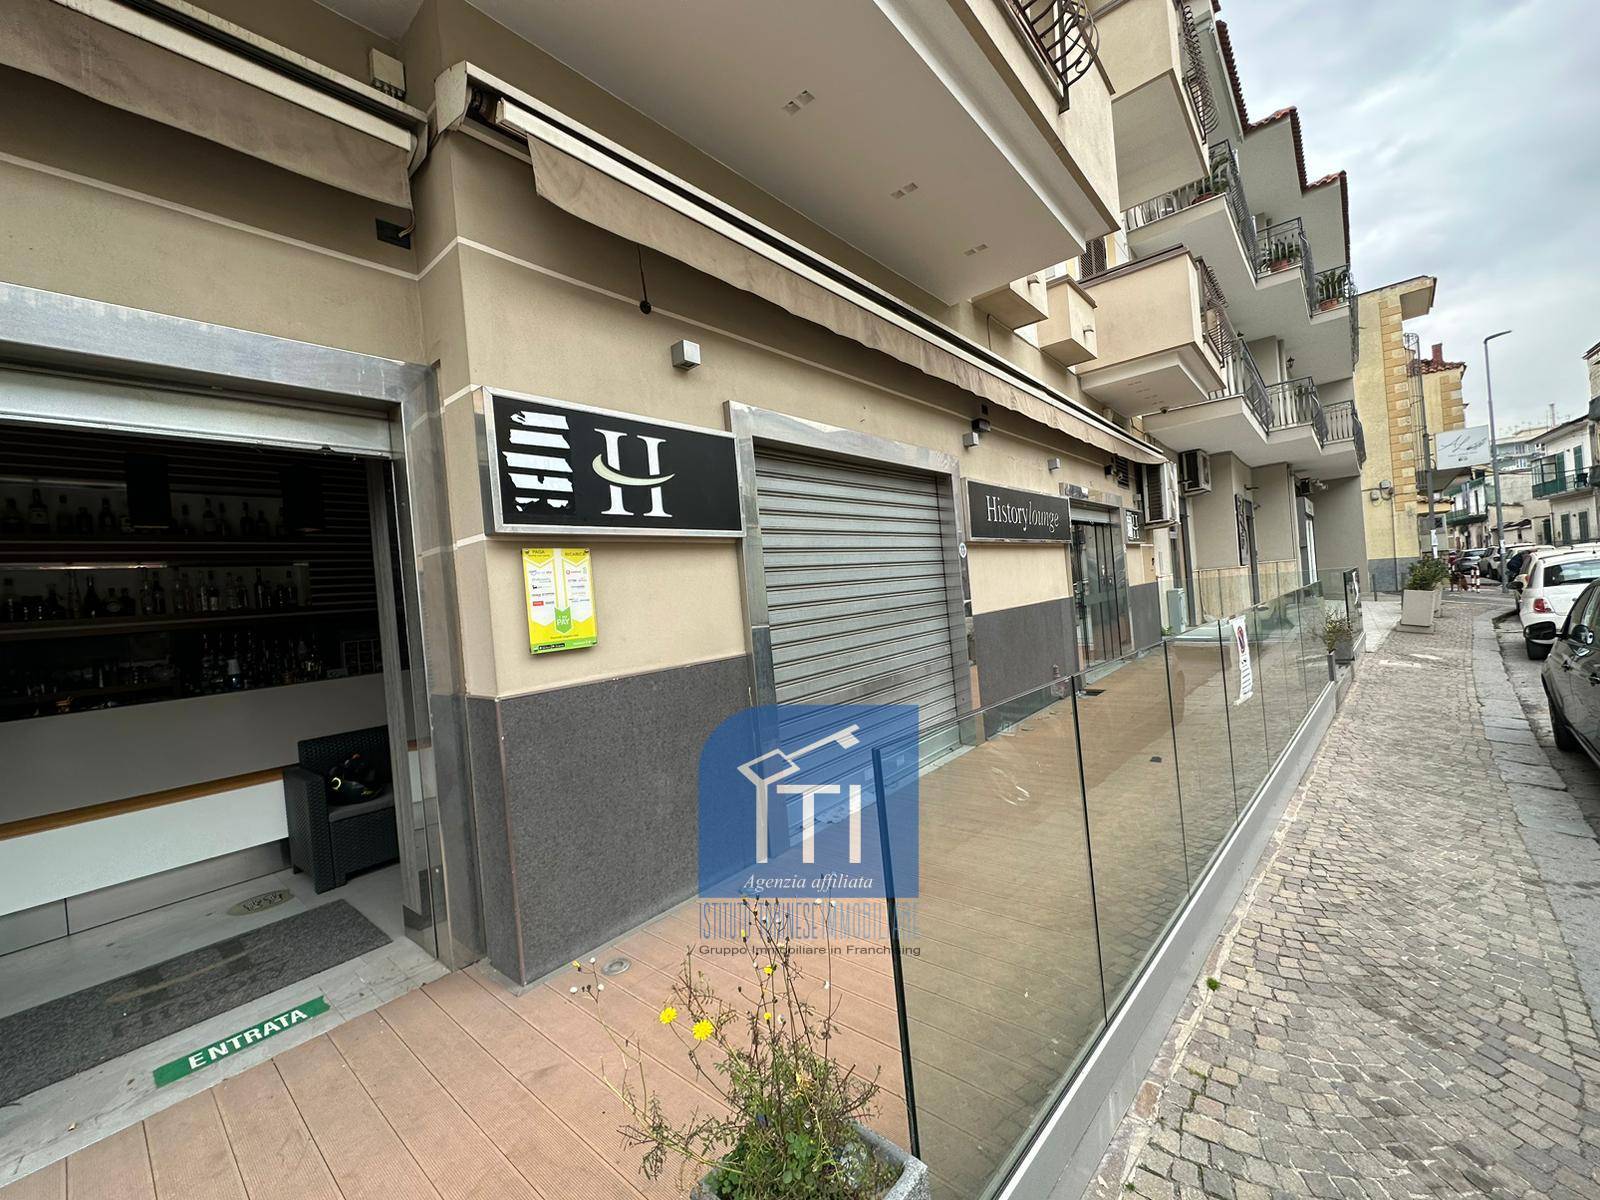 Attività / Licenza in vendita a Giugliano in Campania, 9999 locali, prezzo € 74.000 | PortaleAgenzieImmobiliari.it